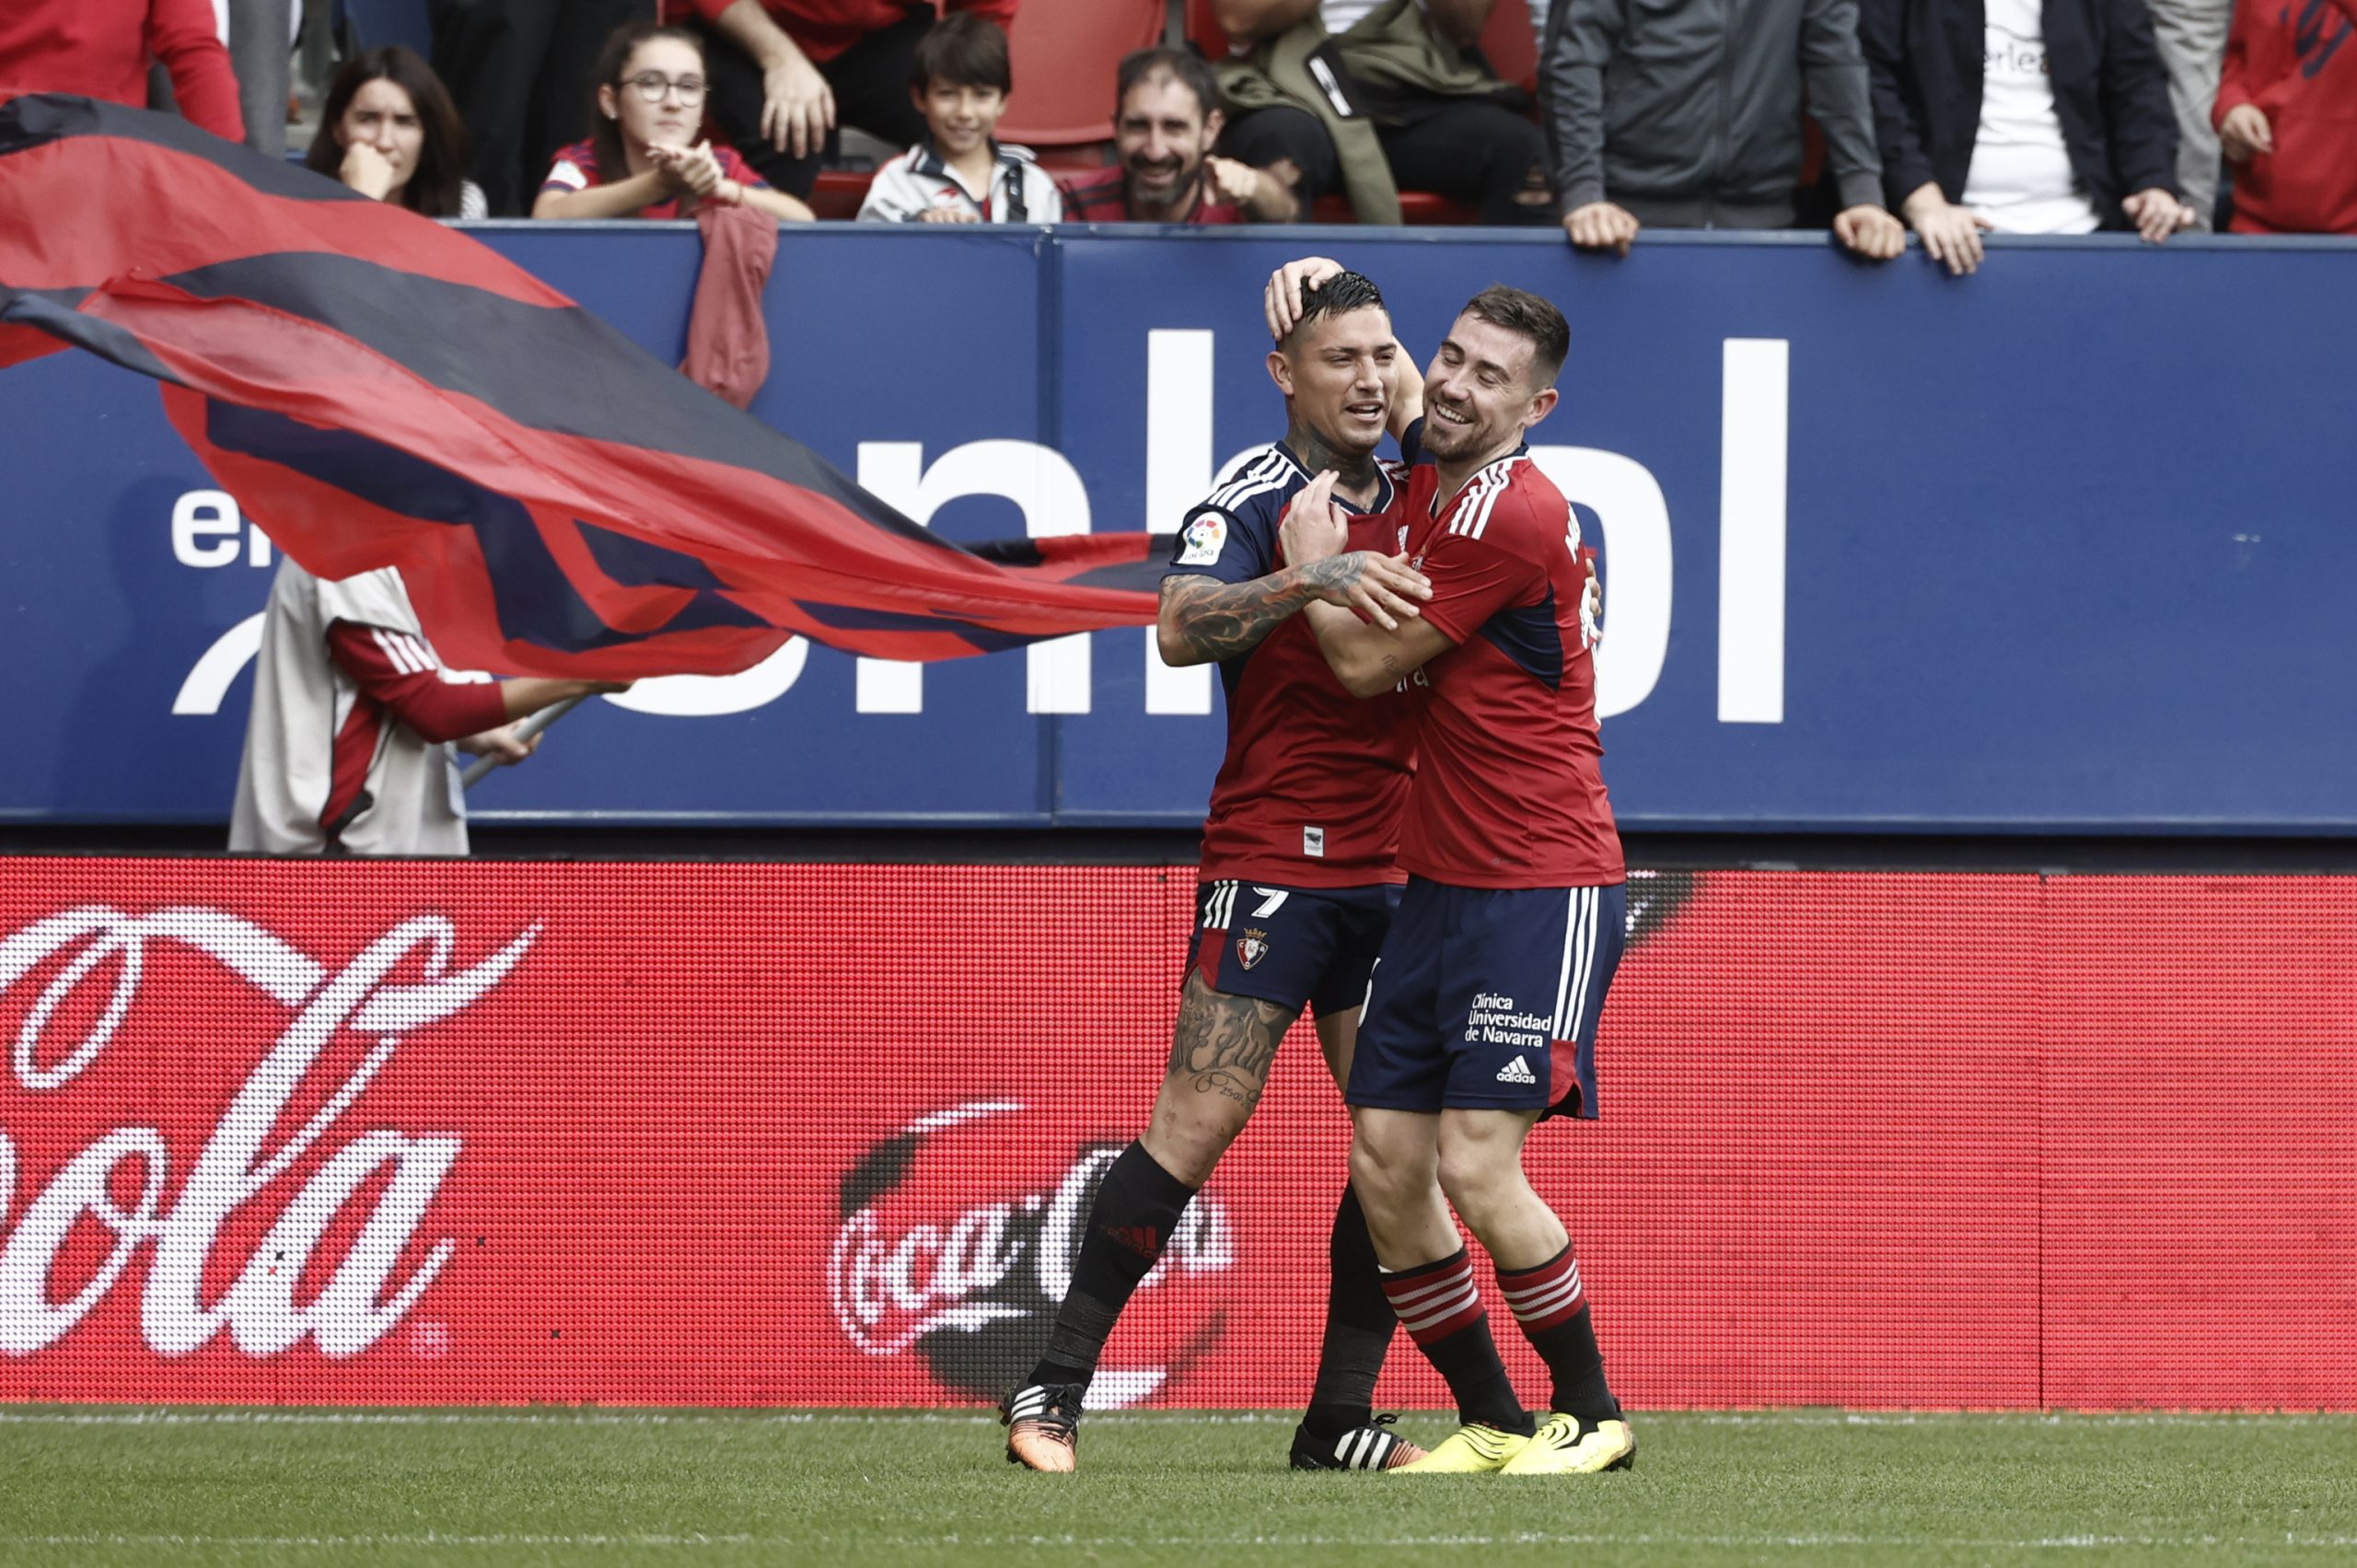 El gesto del Chimy Ávila hace al pequeño Cristian "la persona más feliz del mundo" en el partido ante el Cádiz